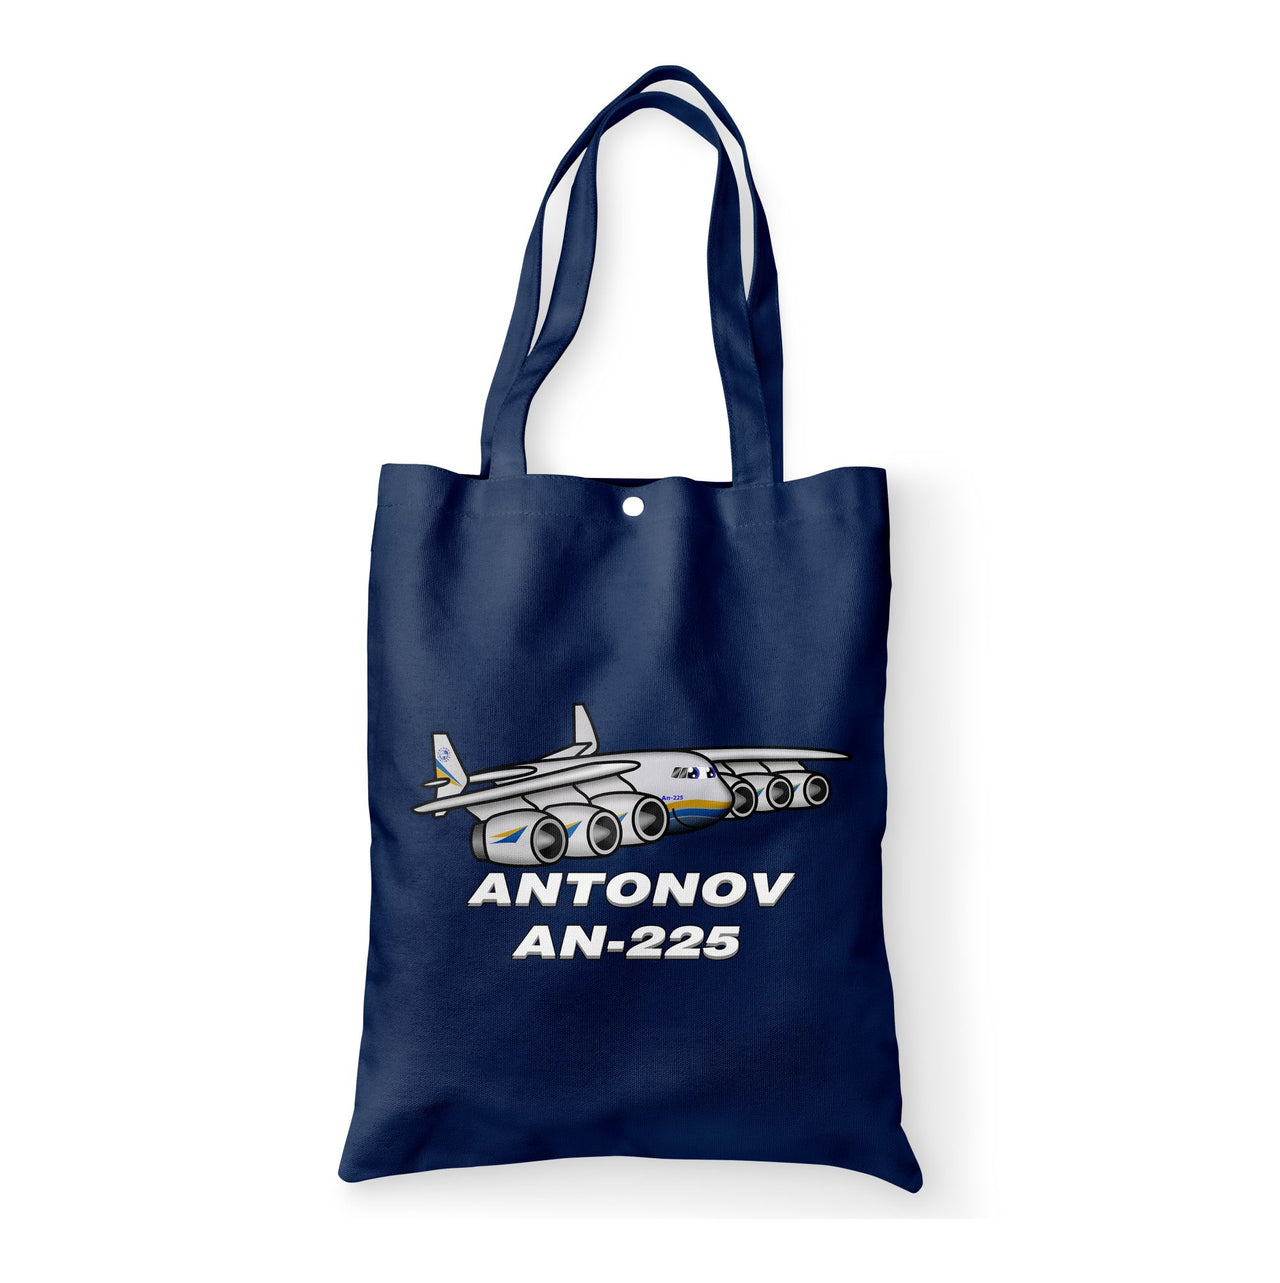 Antonov AN-225 (25) Designed Tote Bags